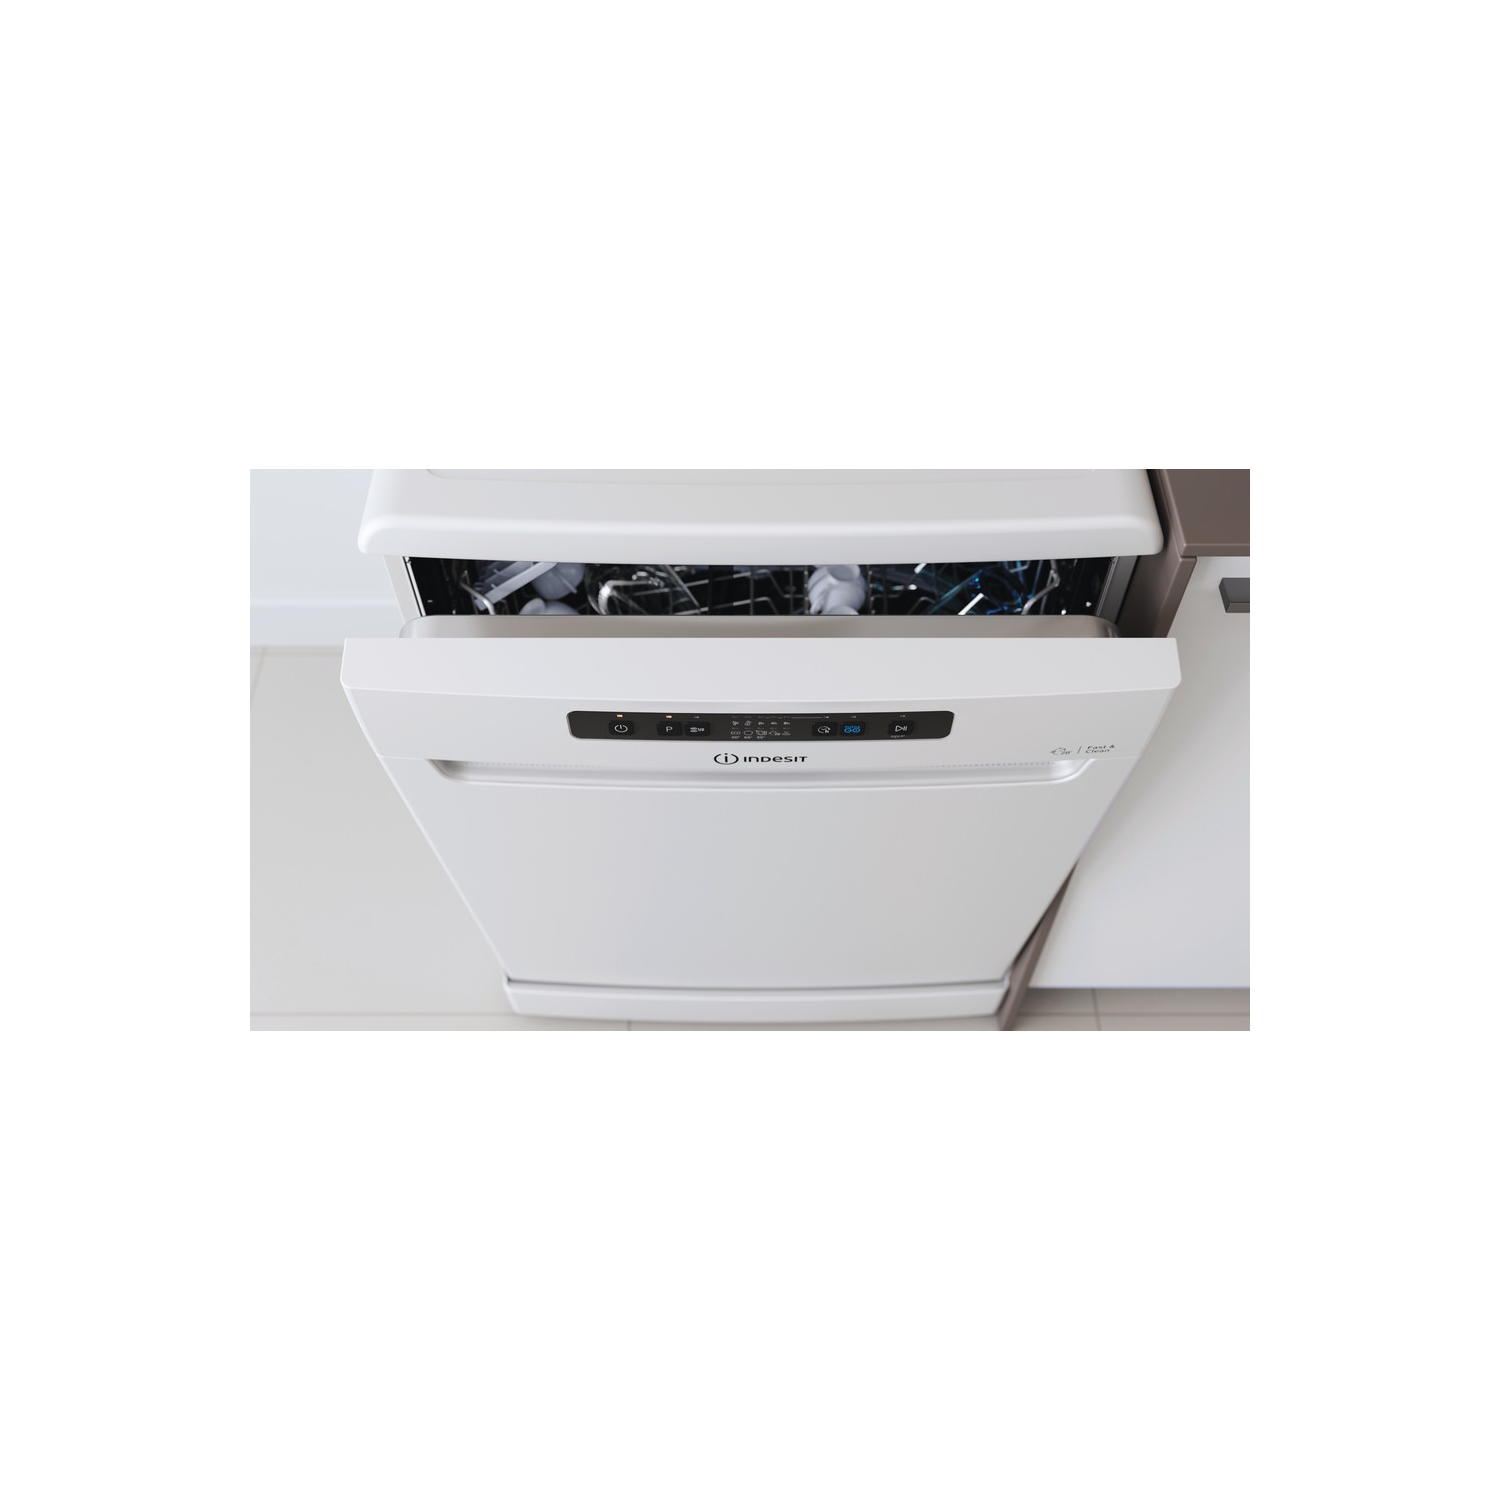 Indesit DFC2B16UK Full Size Dishwasher - White - 13 Place Settings - 6